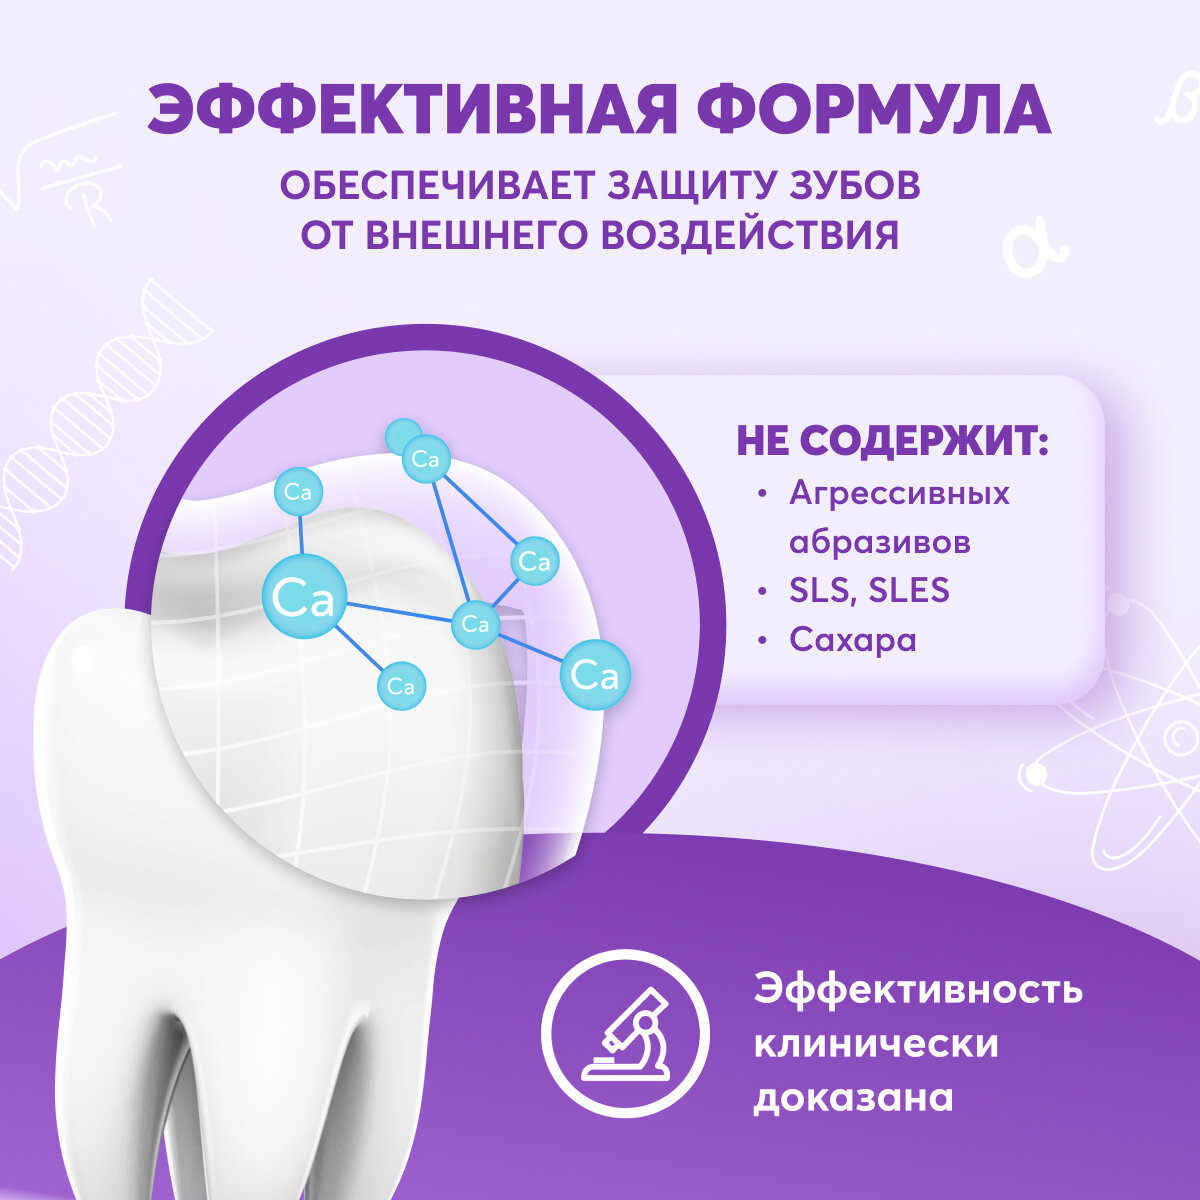 Детская зубная паста PRESIDENT 3-6 лет Пломбир, 50 г